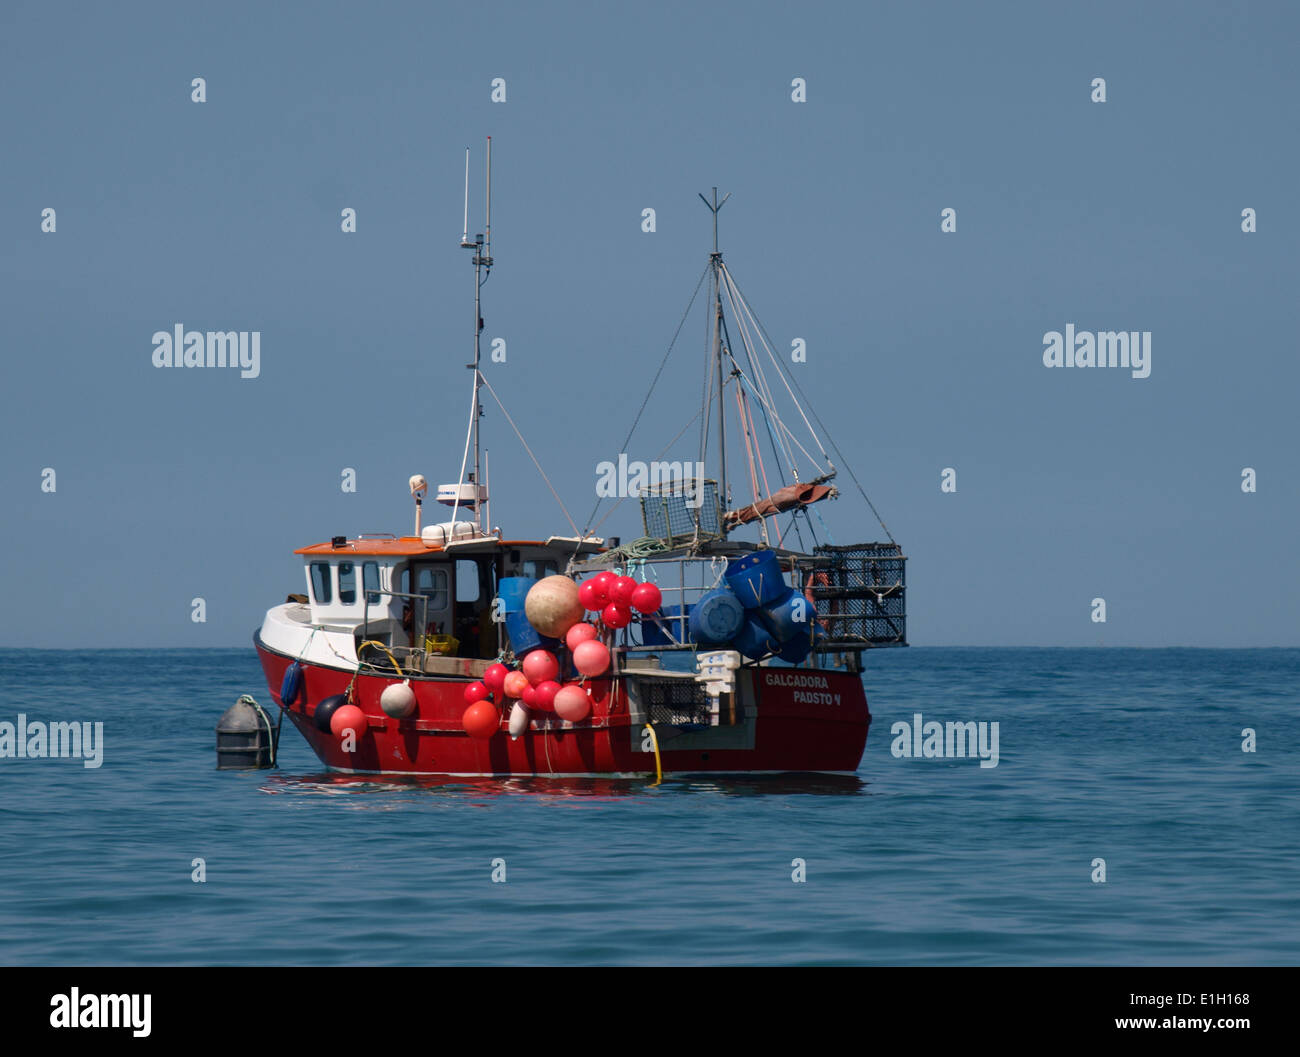 La pesca de arrastre de color rojo brillante, Galcadora fuera de padstow, Cornualles, en el REINO UNIDO Foto de stock